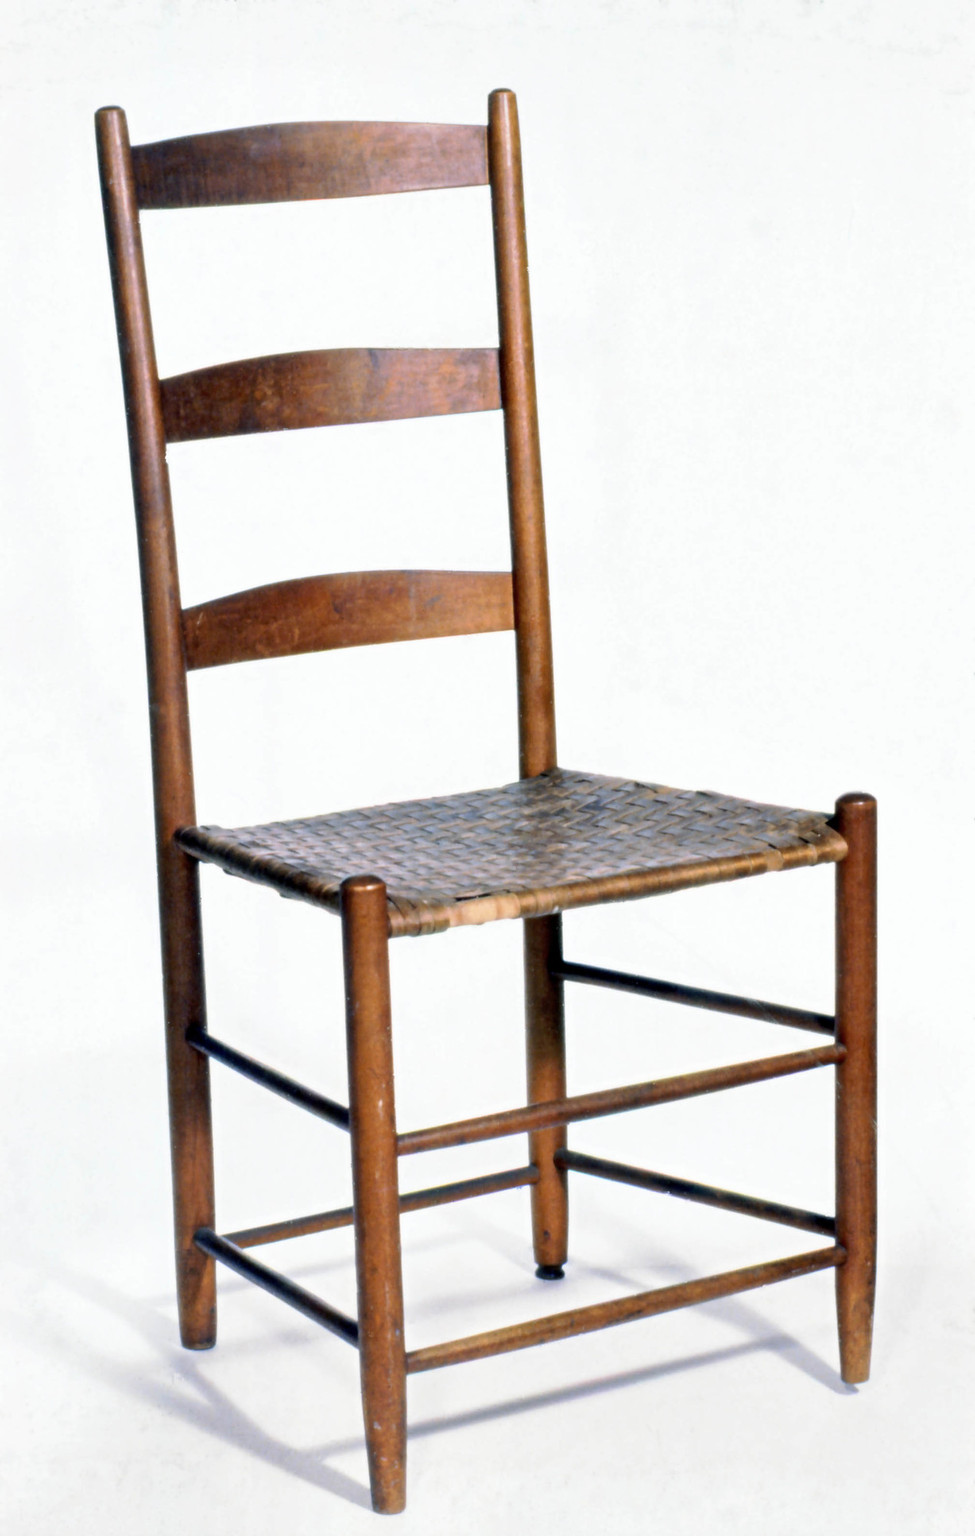 Chaise créée par les shakers dans un bois médium